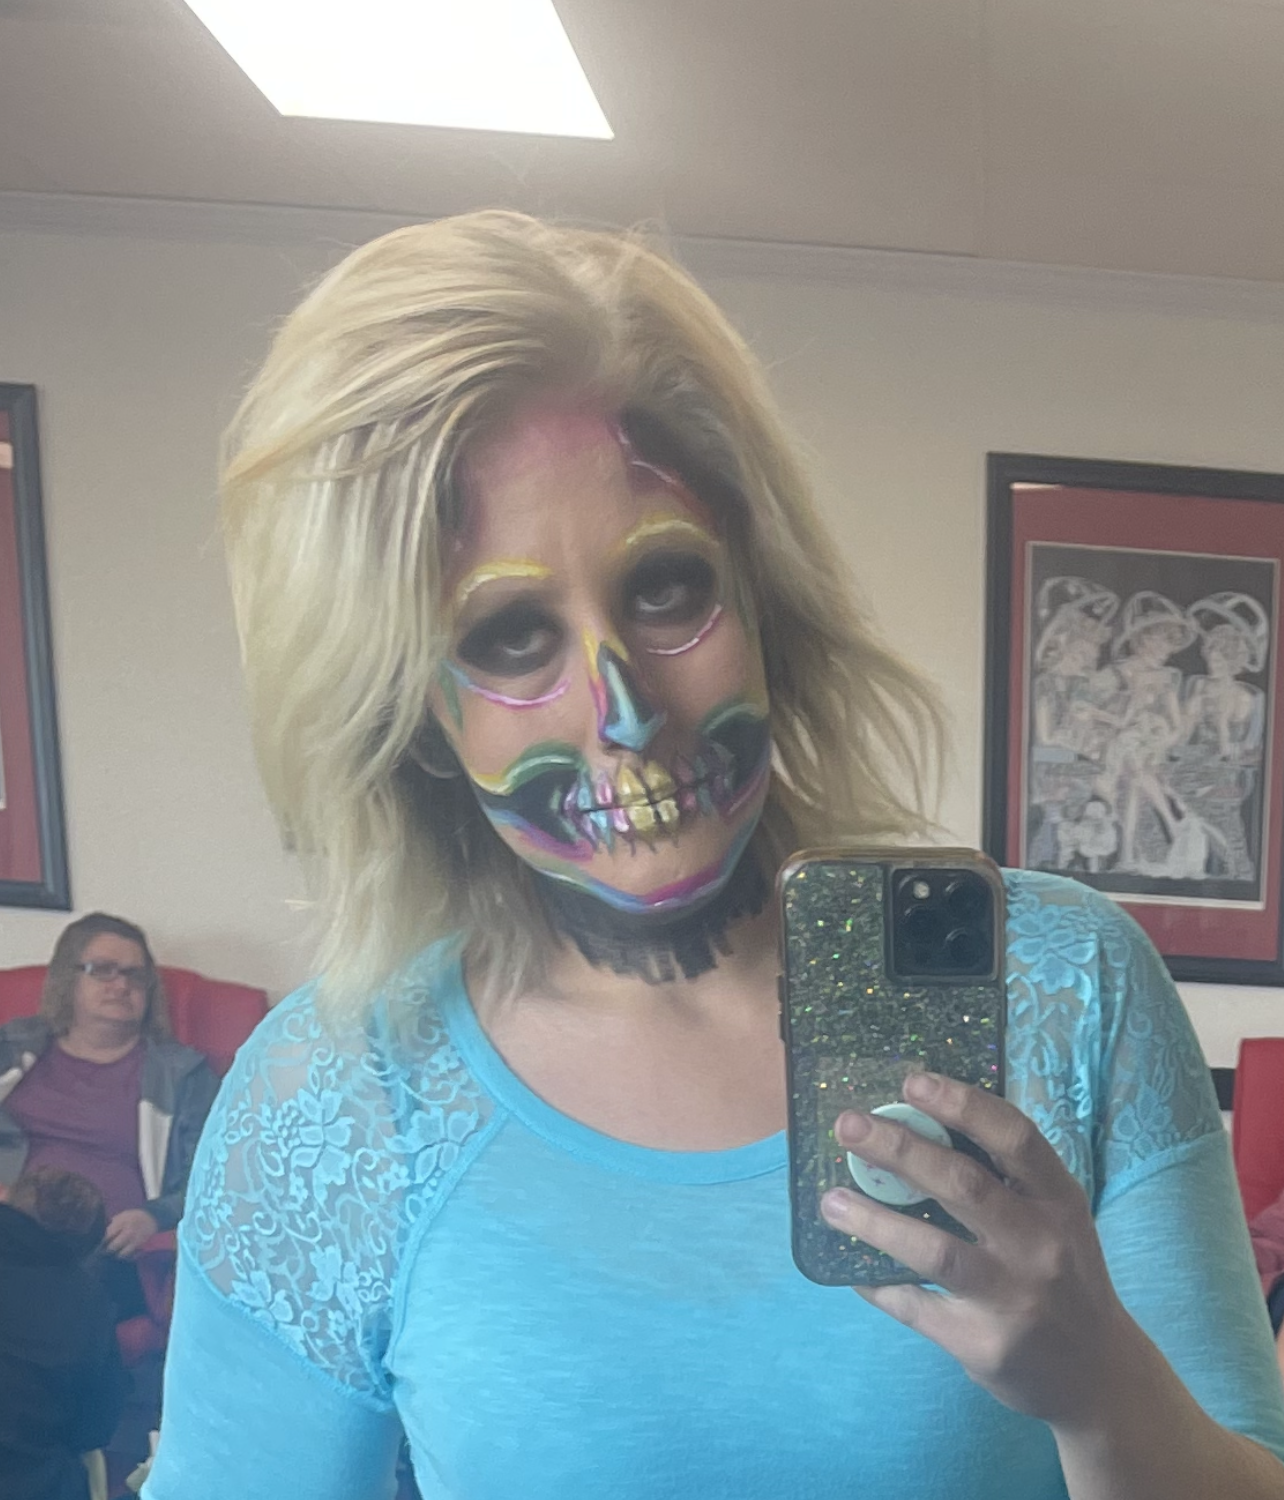 Halloween Skull Makeup